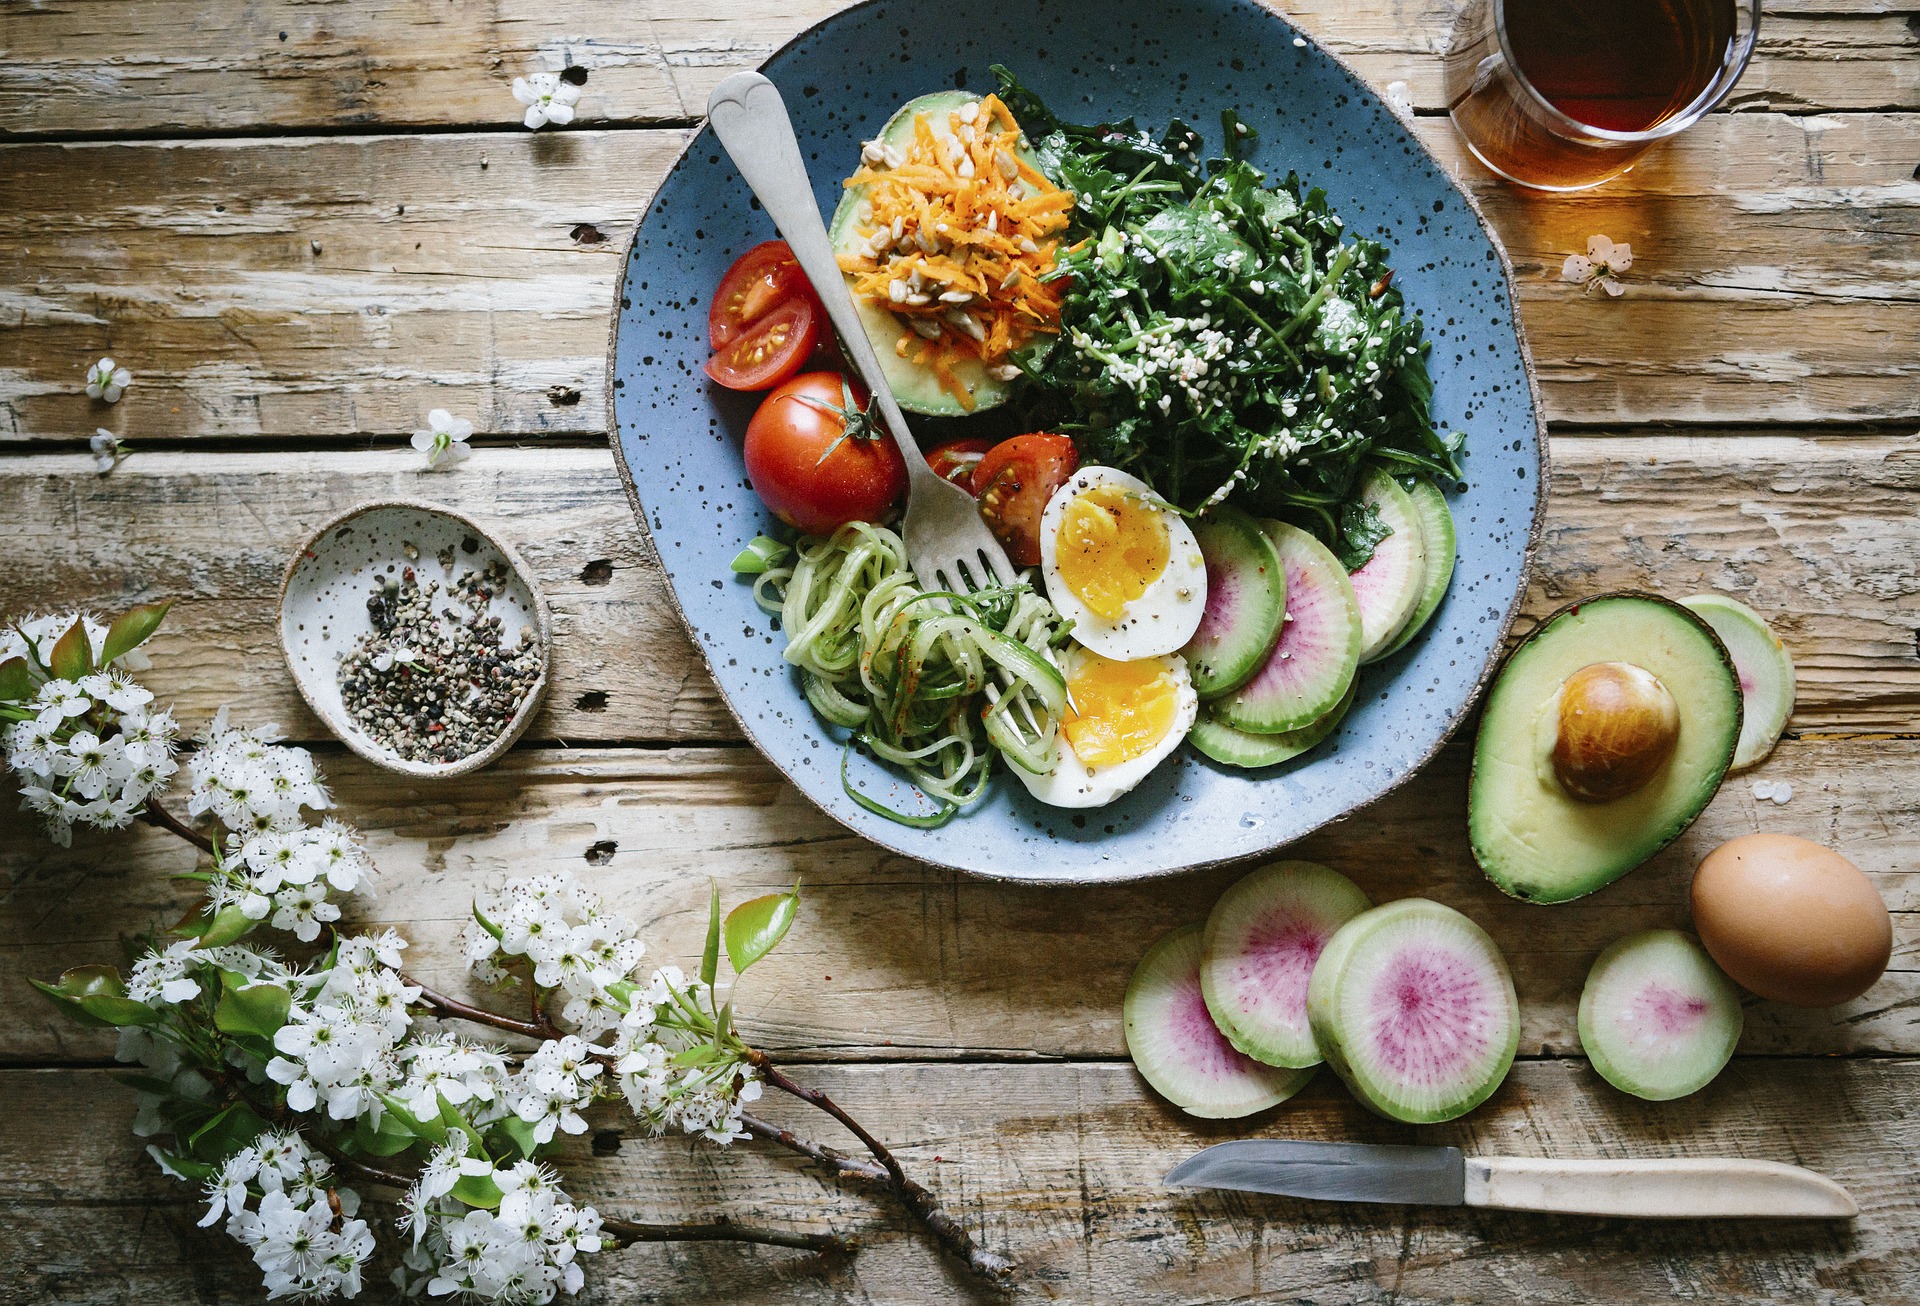 Dieta cetogénica o keto: ¿qué puedes comer y que debes evitar?